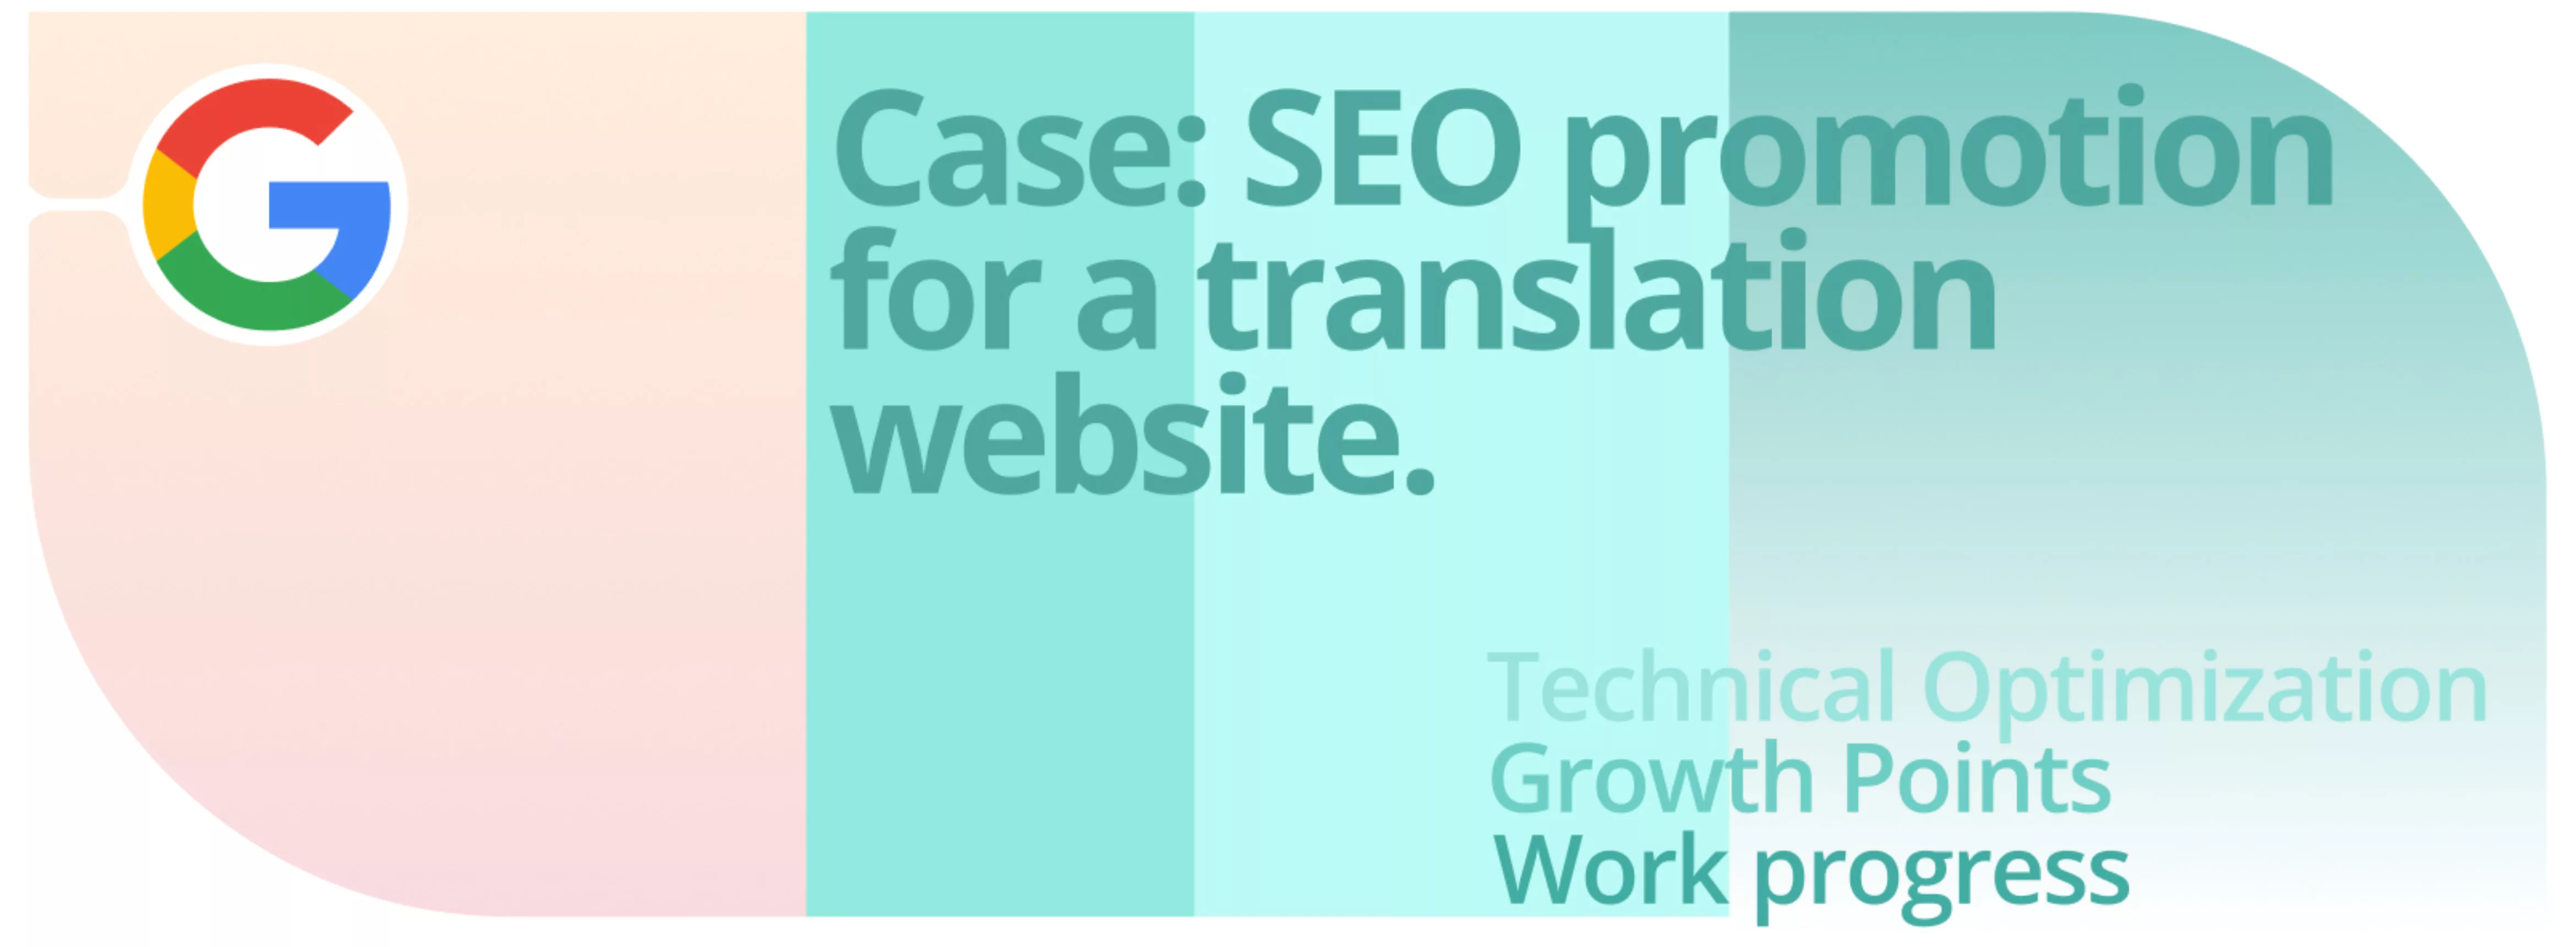 Case: SEO promotion for a translation website.